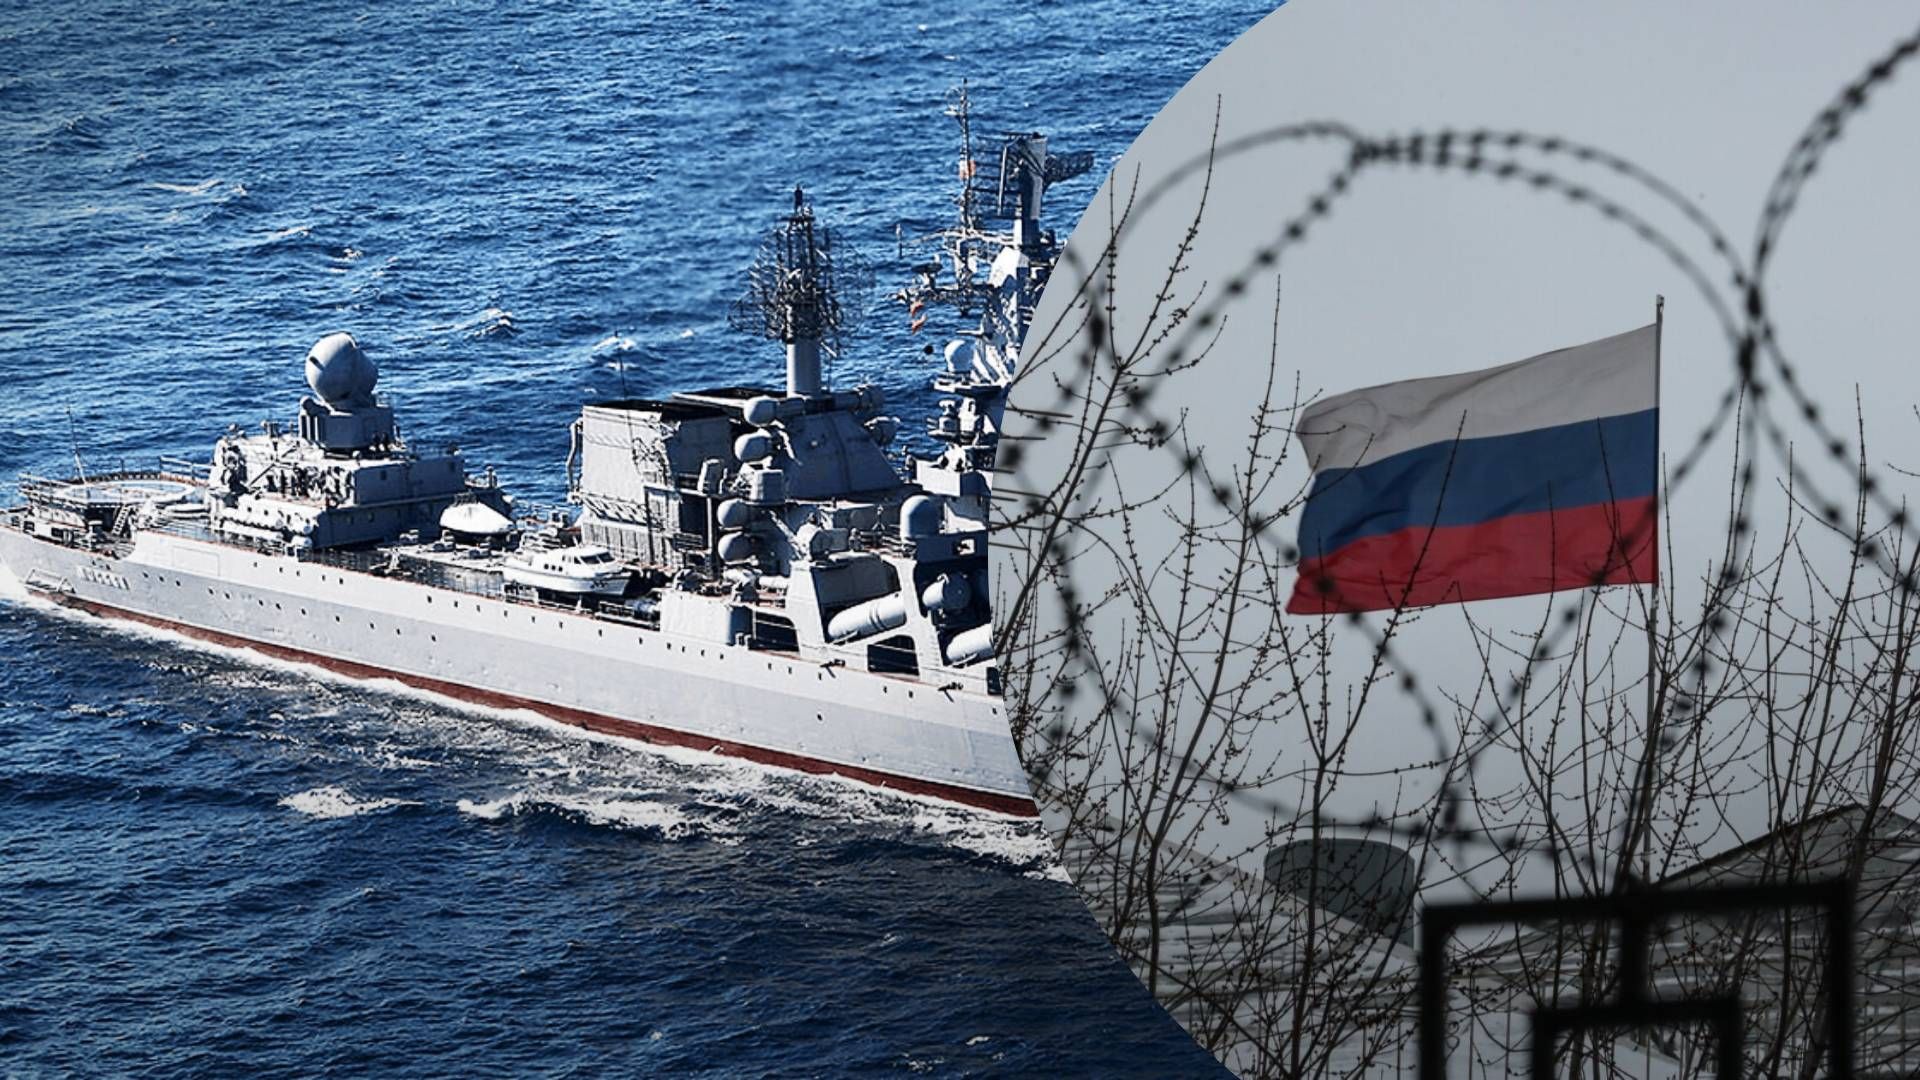 4 НАТО изучает опыт Украины в Черном море, чтобы адаптироваться к изменениям современного боя - адмирал - 24 Канал